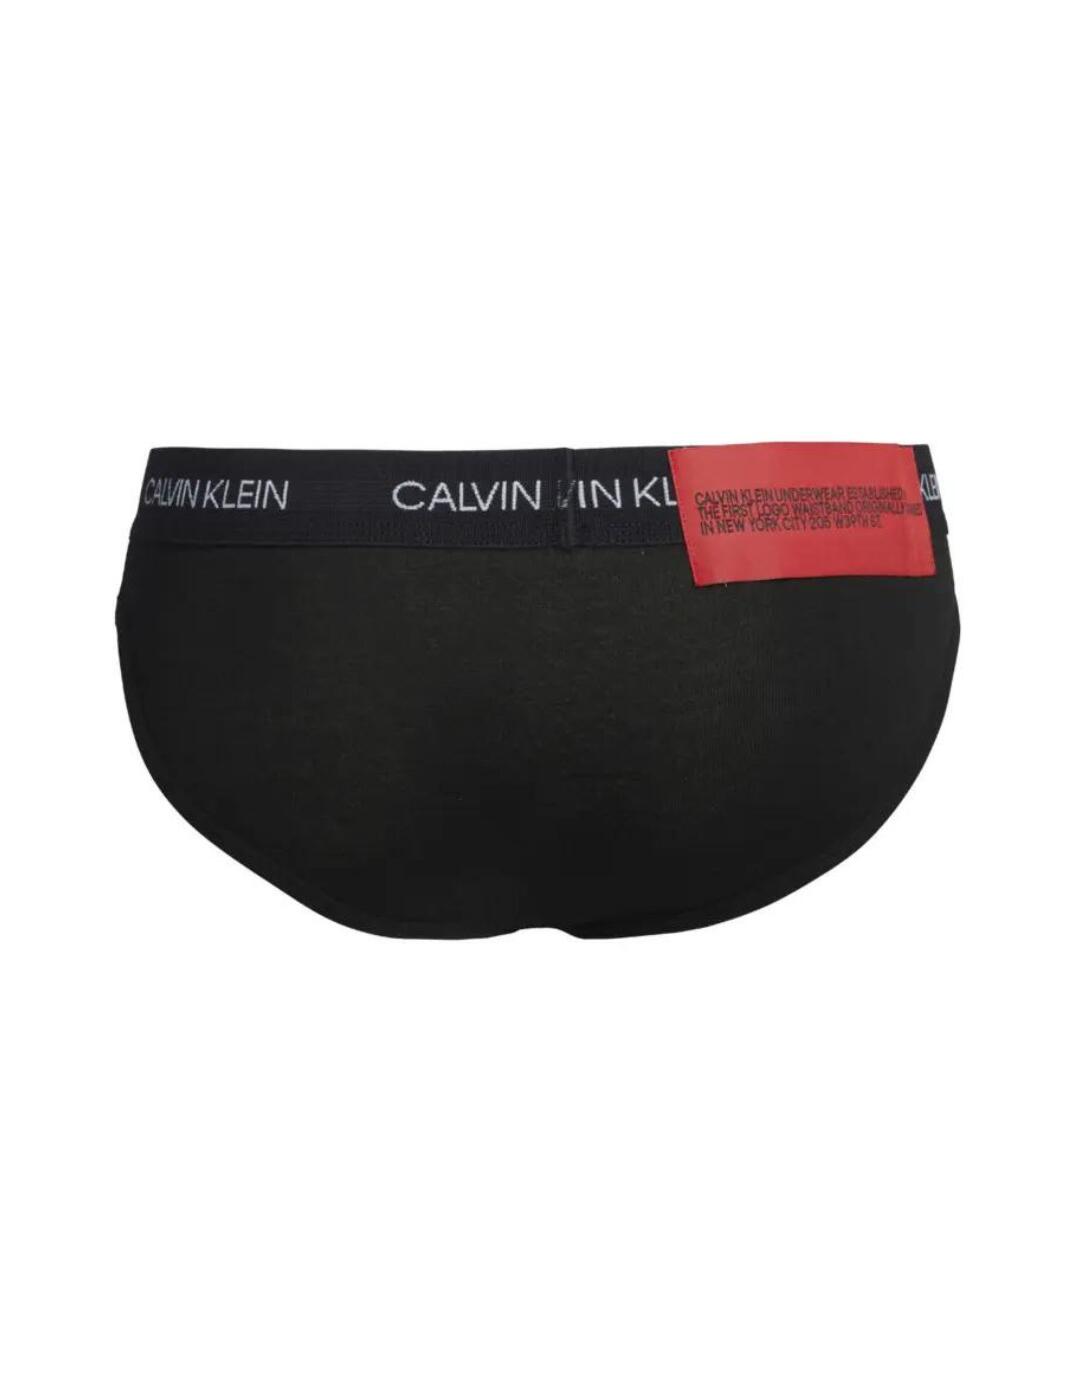 Calvin Klein - This is the original designer underwear. Introduced